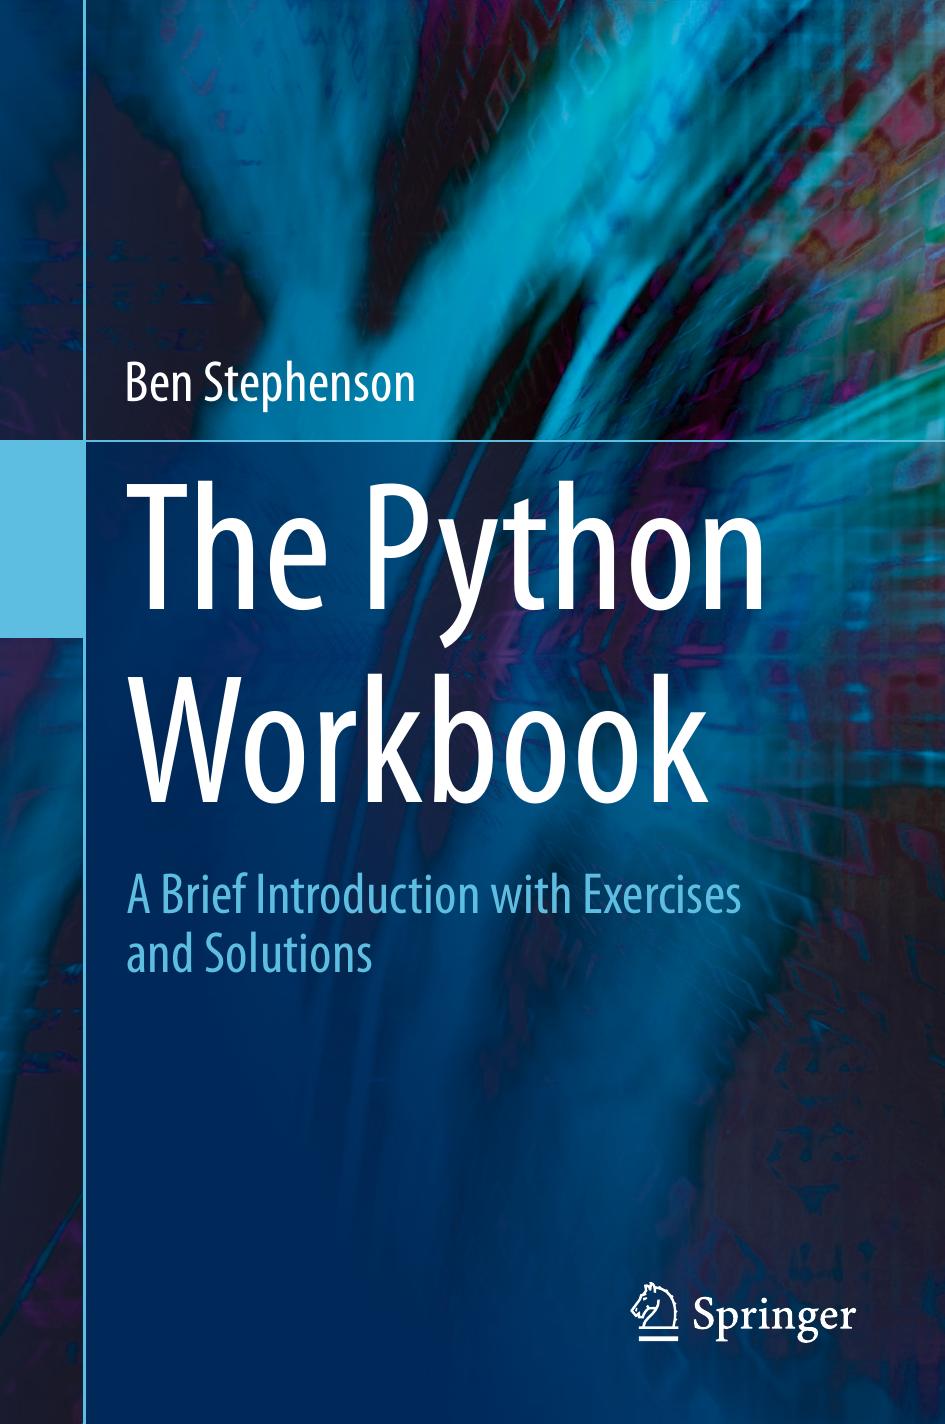 The Python Workbook by Ben Stephenson